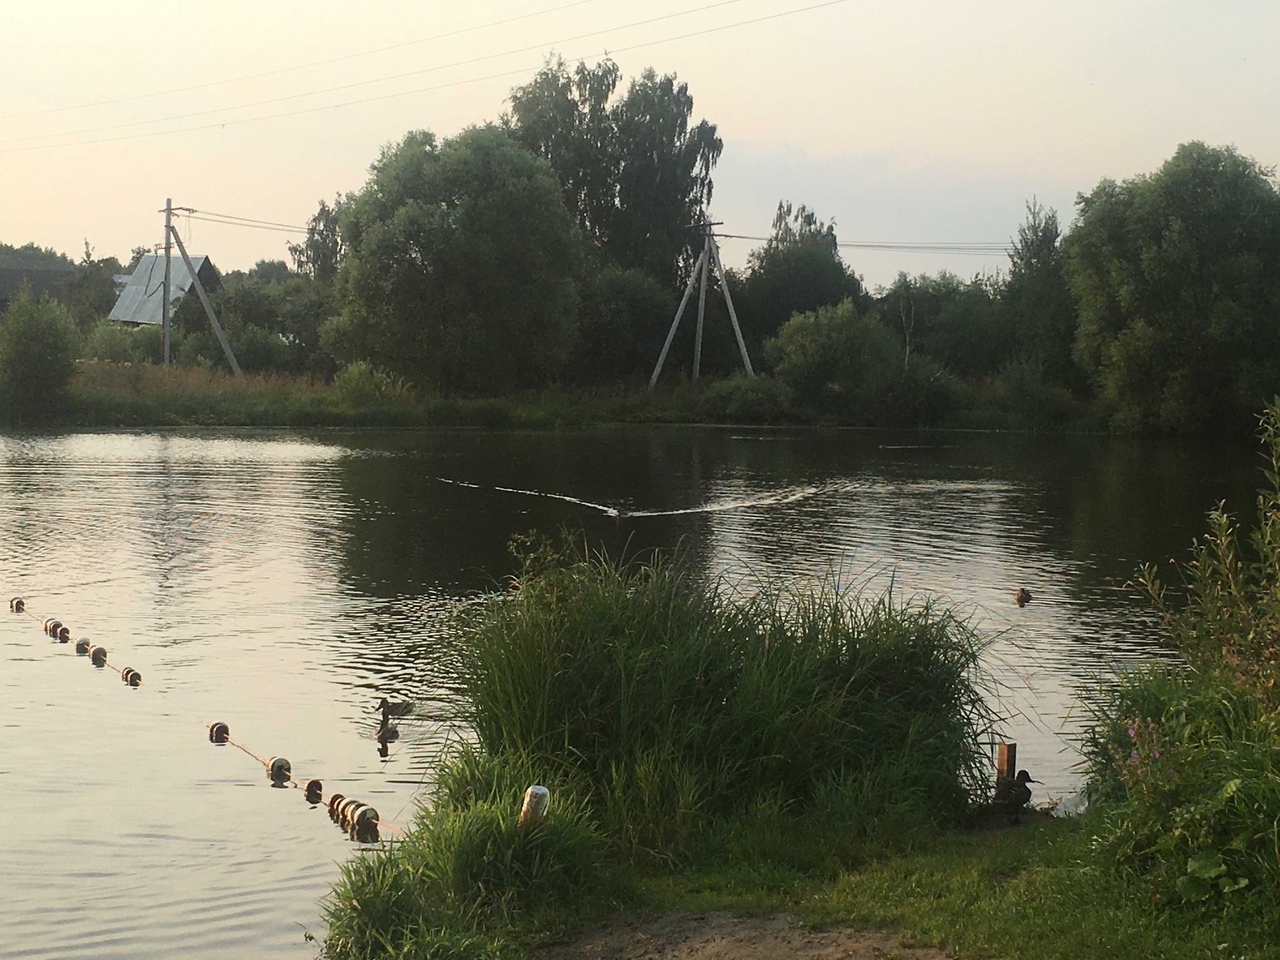 Роспотребнадзор запретил купаться в озерах Семязино и Глубокое во Владимире 